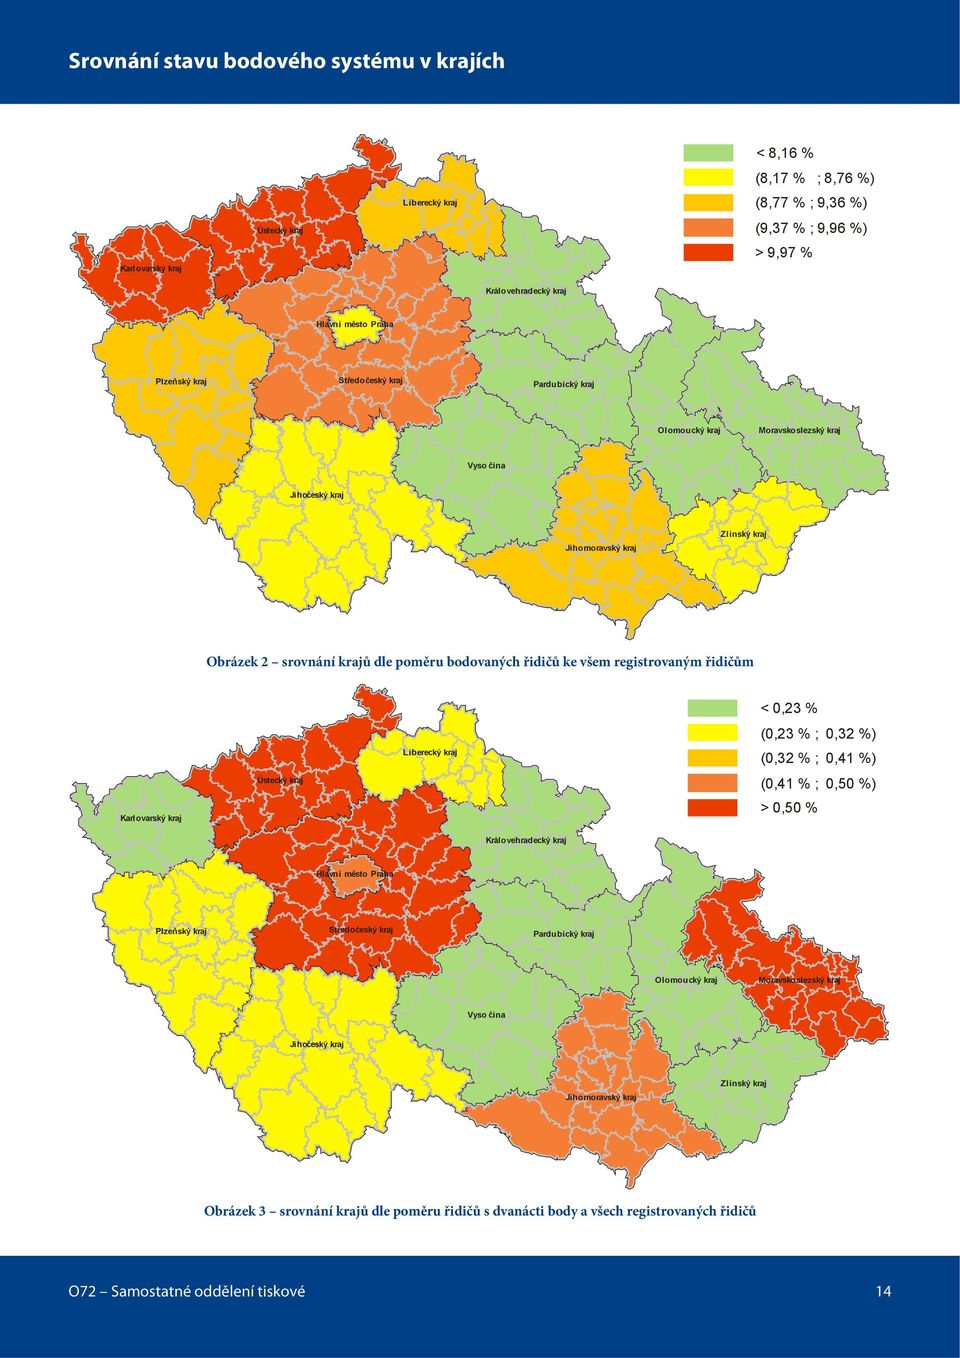 všem registrovaným řidičům Karlovarský kraj Ústecký kraj Liberecký kraj < 0,23 % (0,23 % ; 0,32 %) (0,32 % ; 0,41 %) (0,41 % ; 0,50 %) > 0,50 % Královehradecký kraj Hlavní město Praha Plzeňský kraj